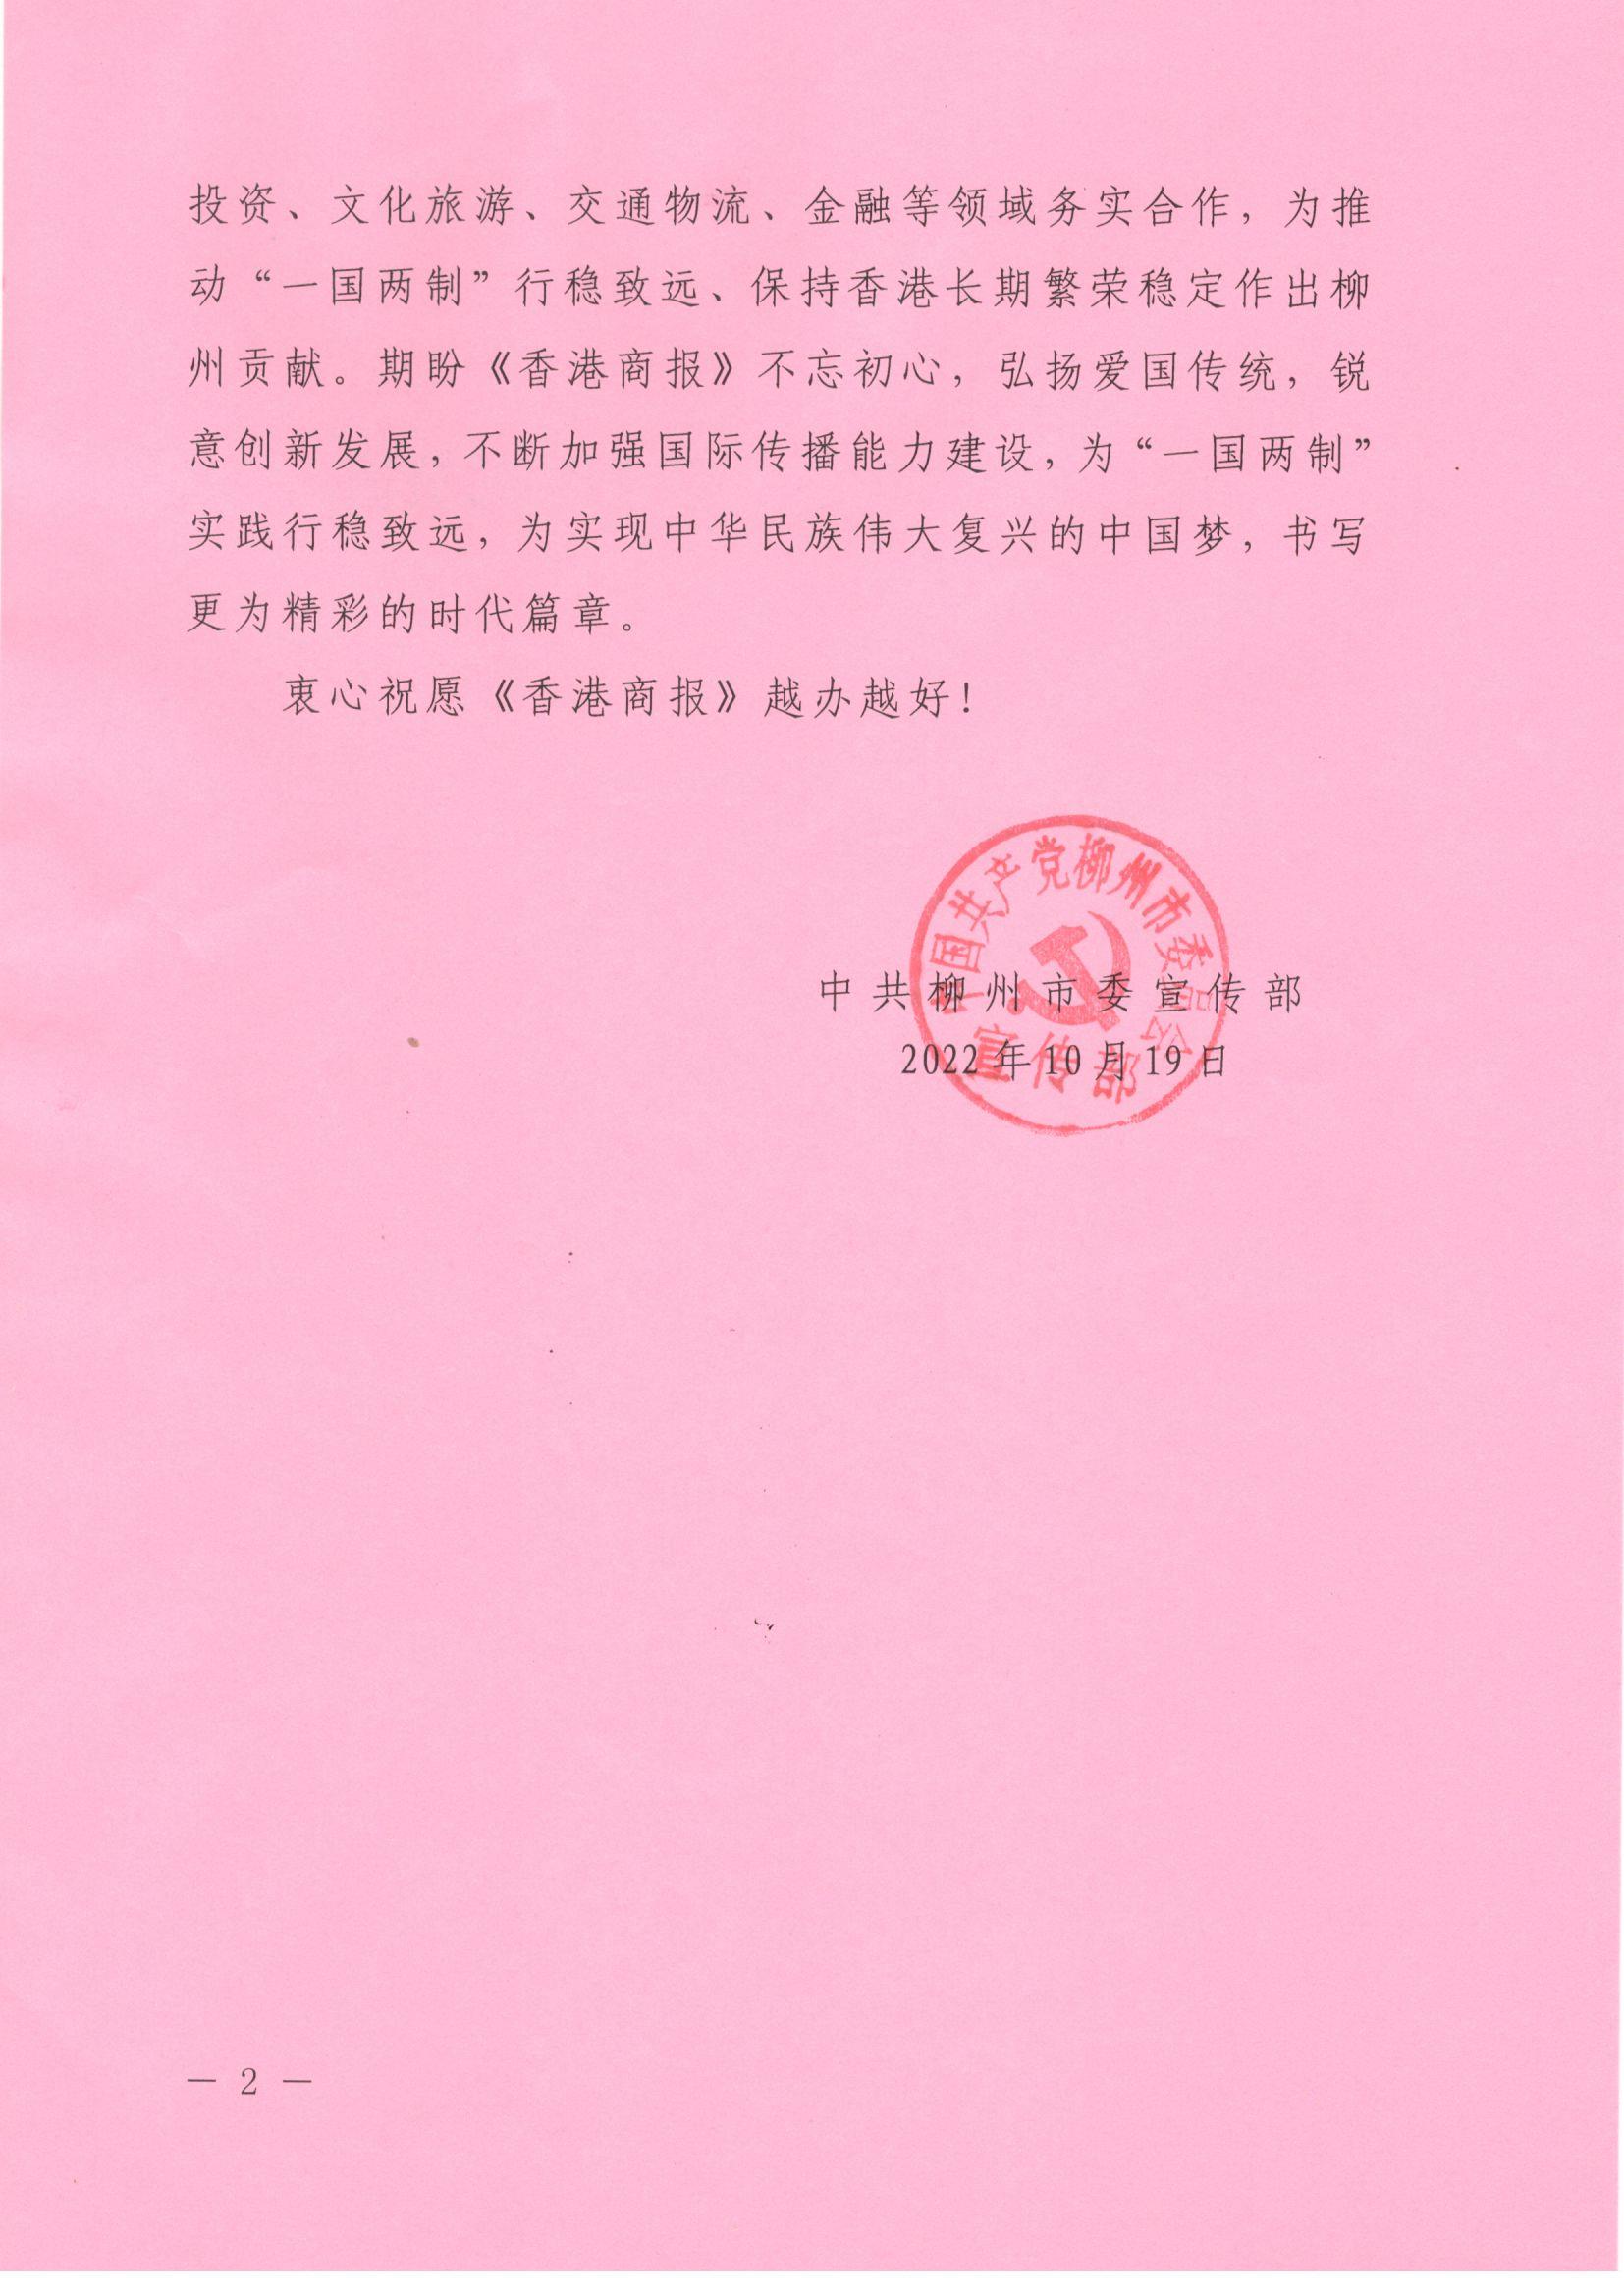 中共柳州市委员会宣传部_页面_2.jpg